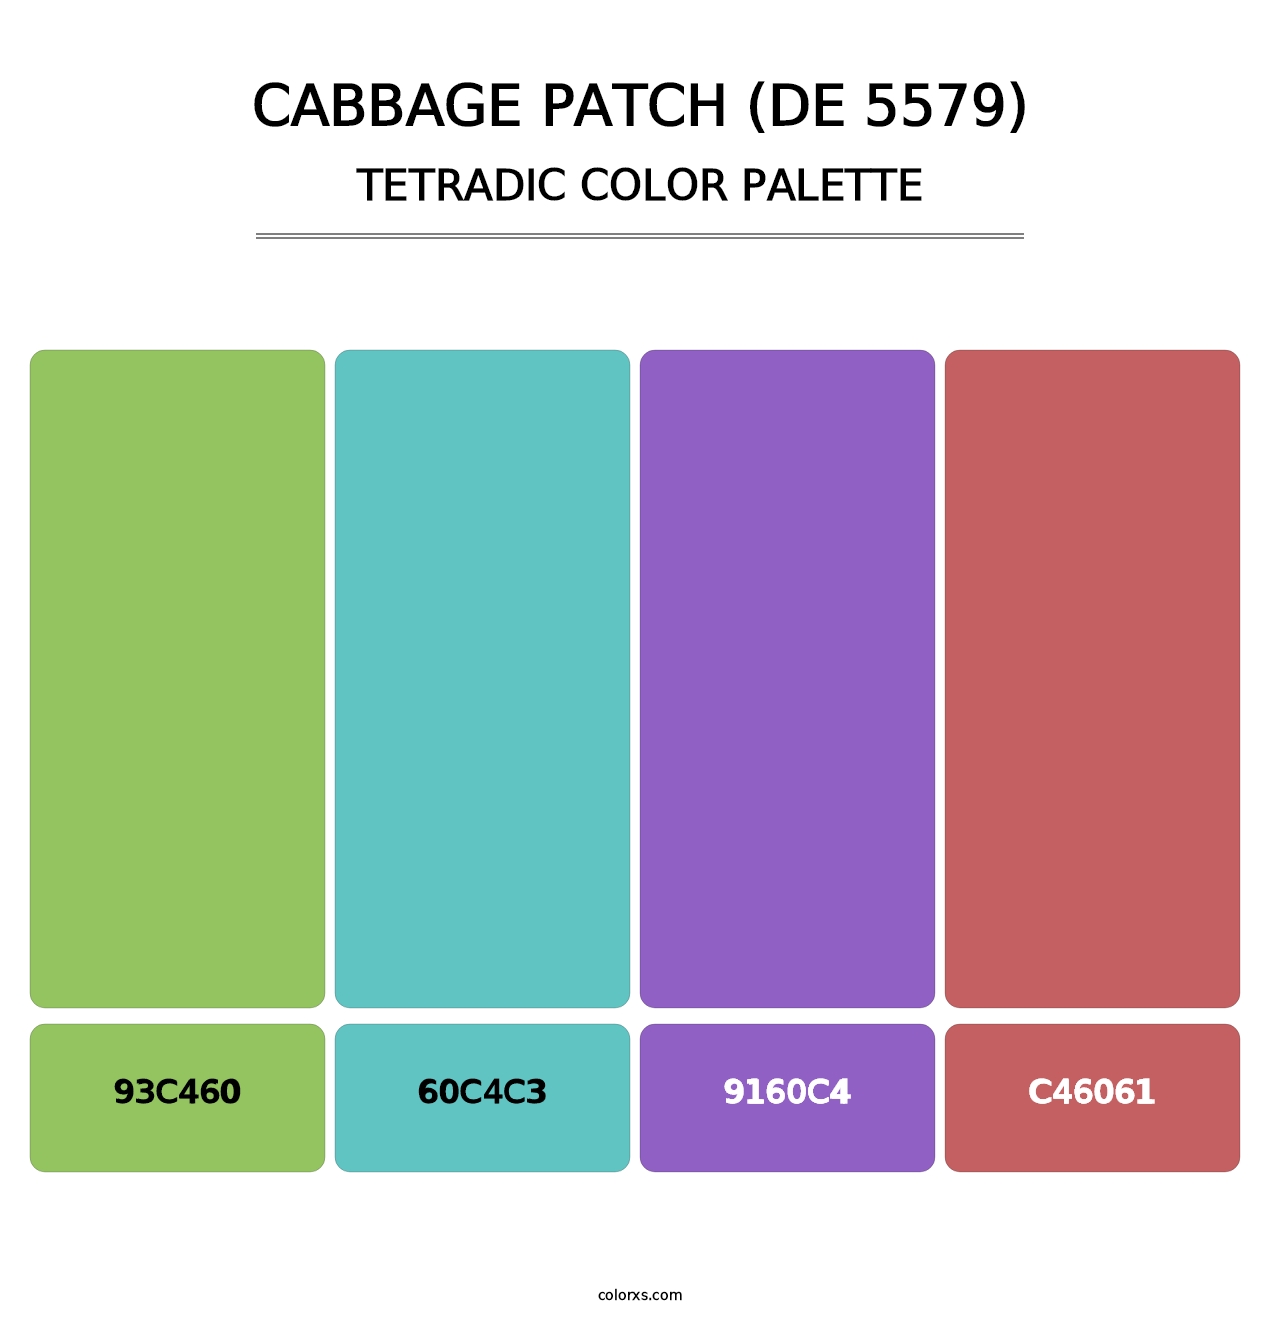 Cabbage Patch (DE 5579) - Tetradic Color Palette